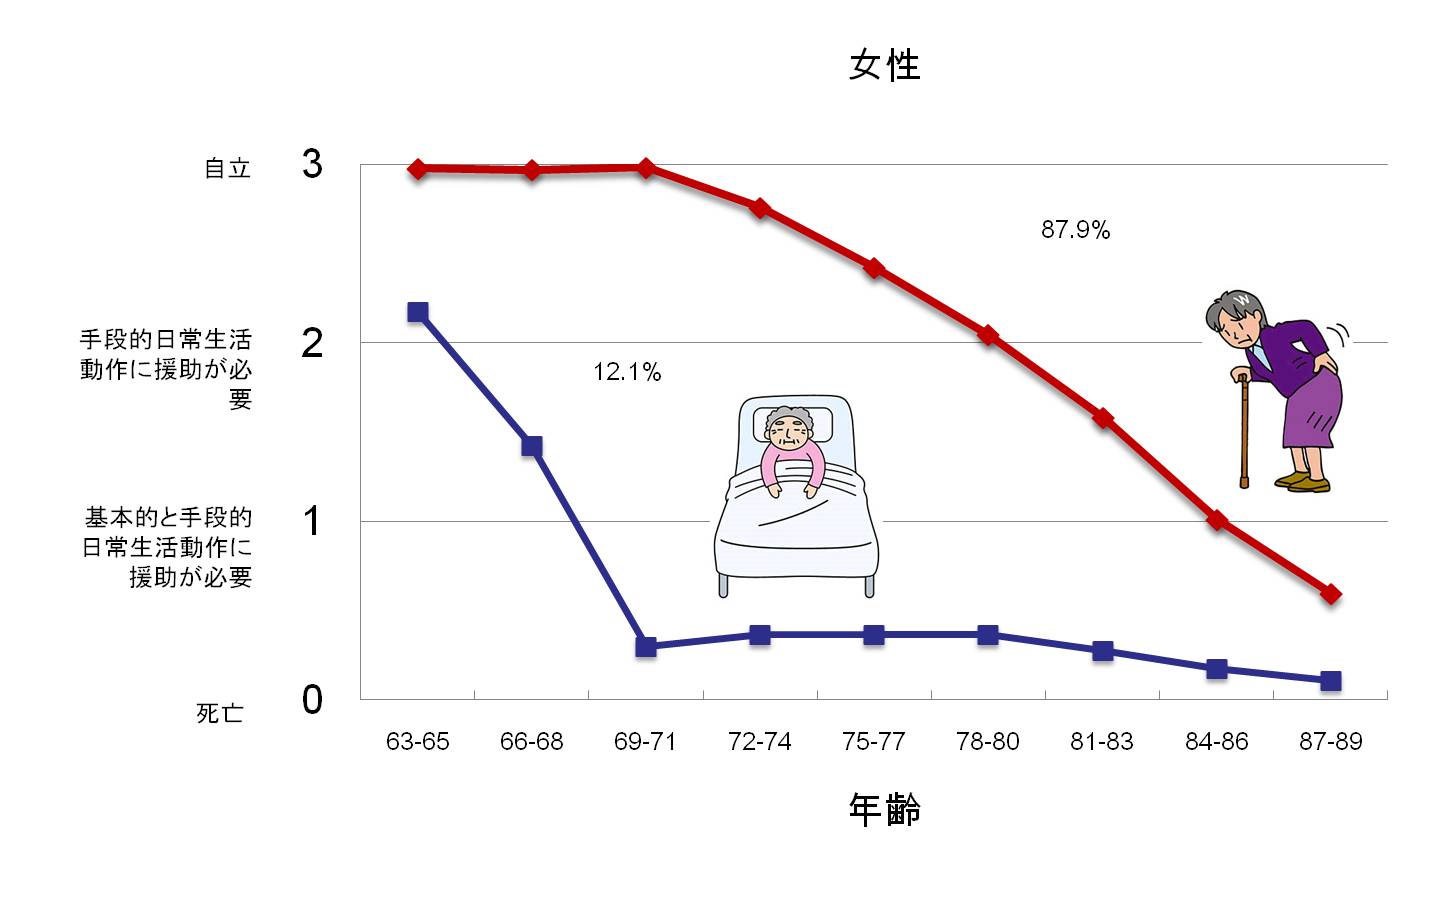 http://robust-health.jp/article/%E9%AB%98%E9%BD%A2%E5%A5%B3%E6%80%A7%E8%87%AA%E7%AB%8B%E5%BA%A6.jpg